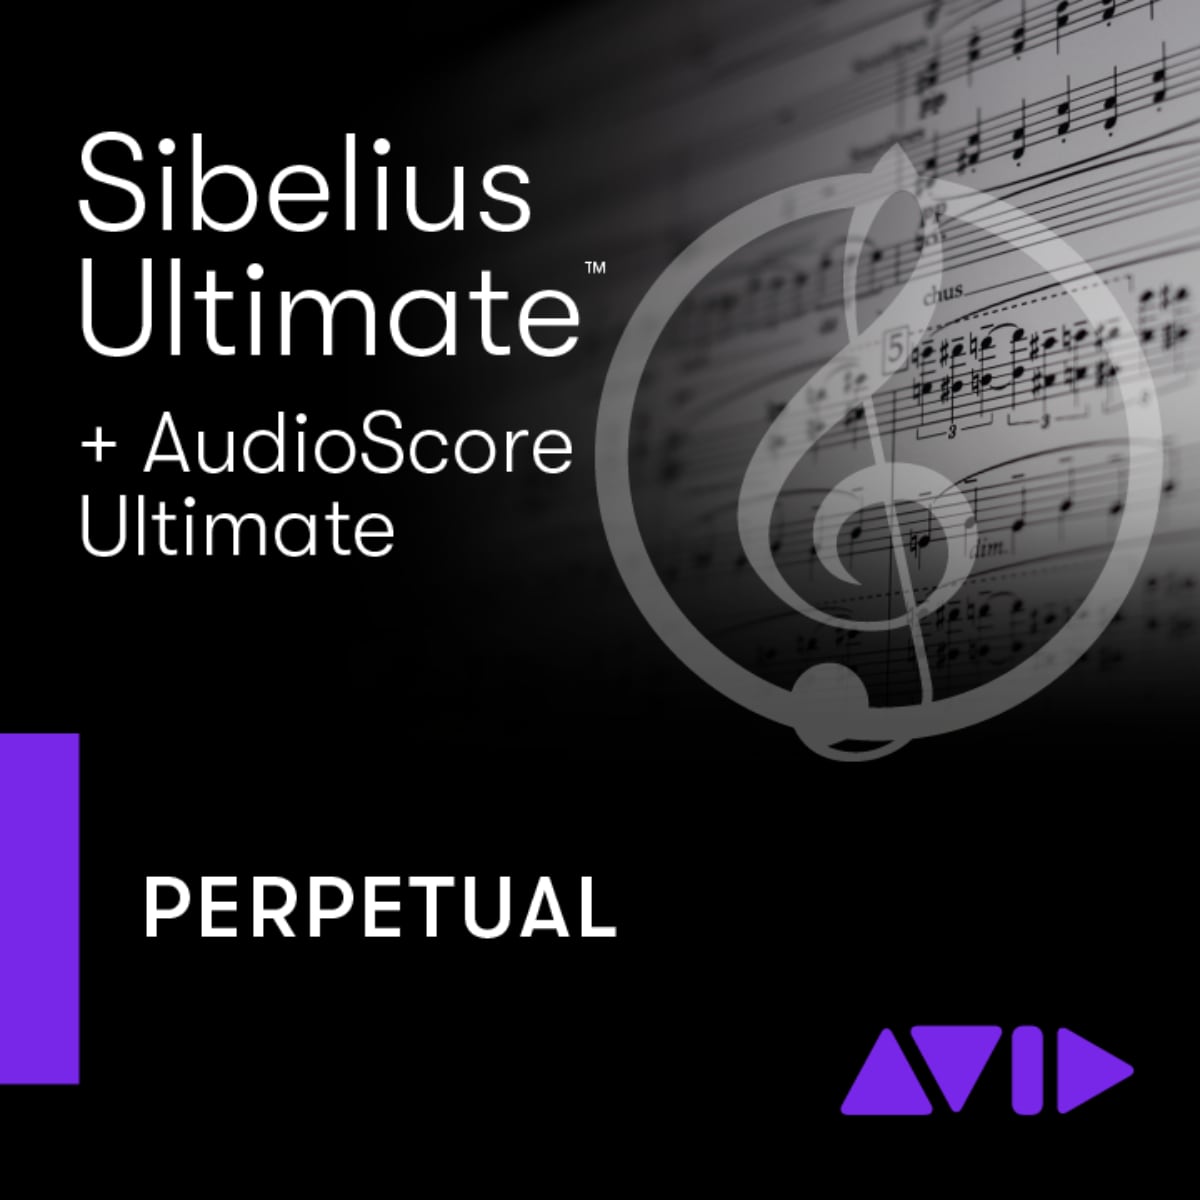 AVID Sibelius | Ultimate Perpetual License NEW + AudioScore Ultimate